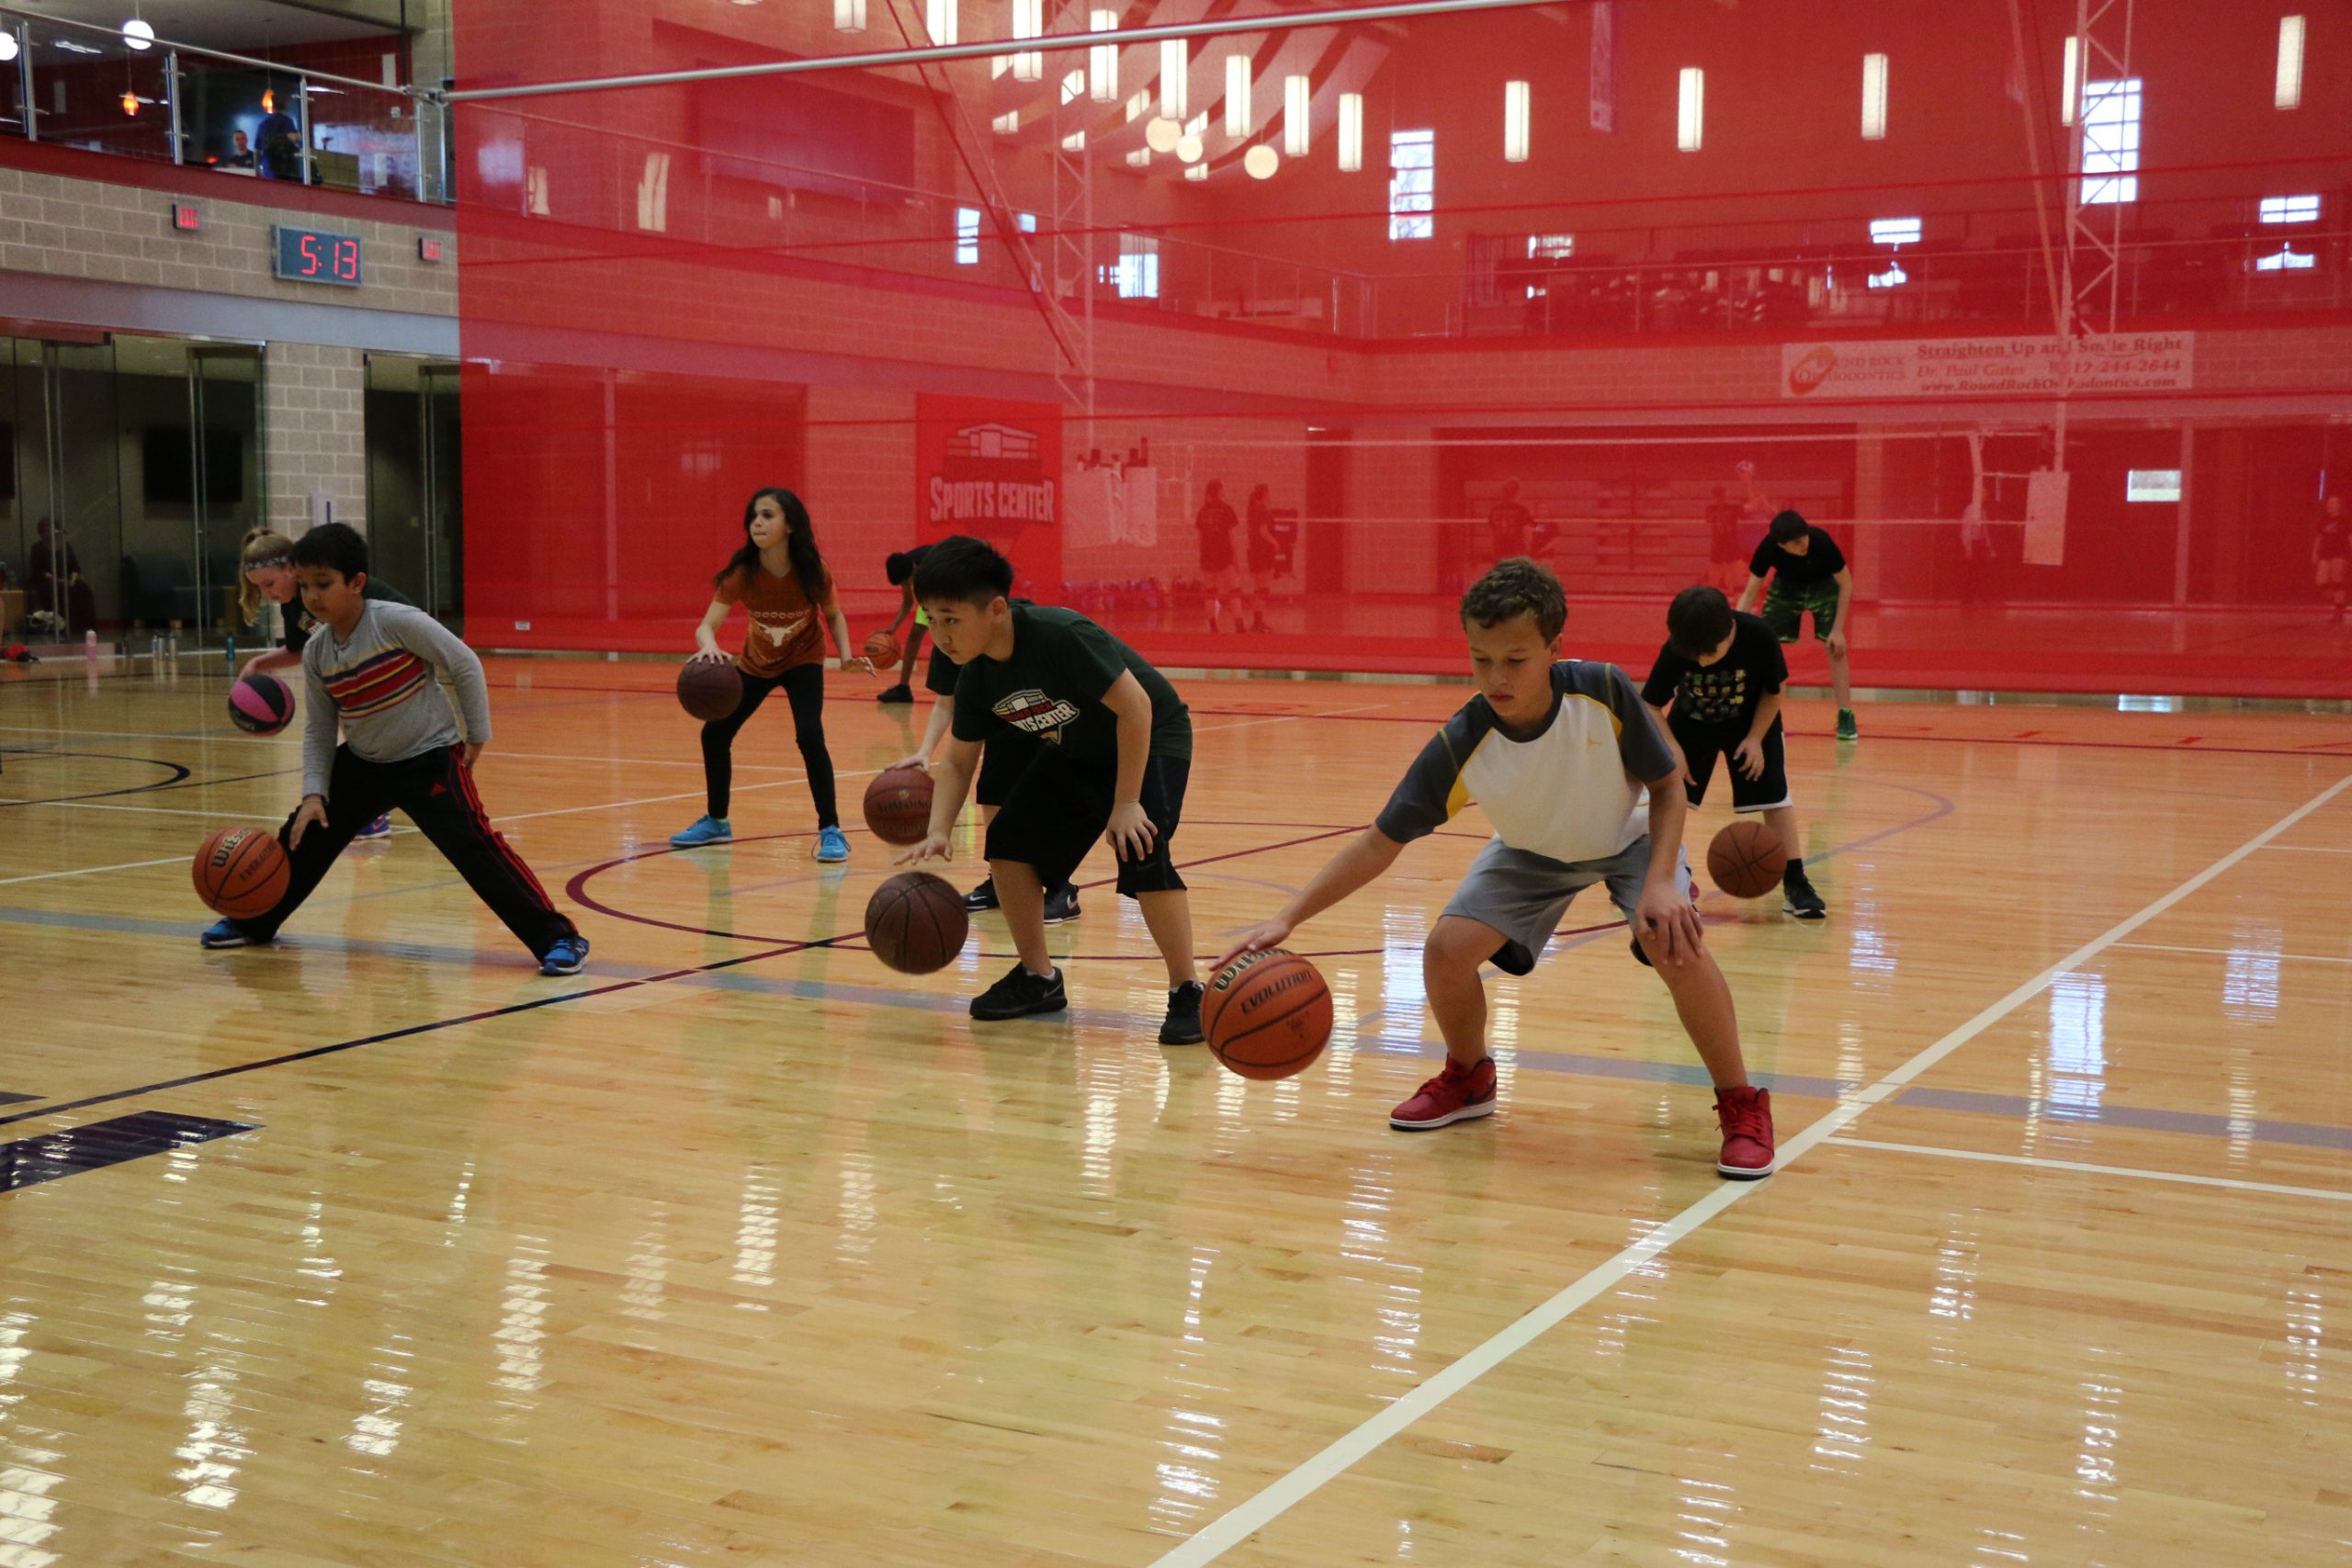 Kids dribbling basketball on court